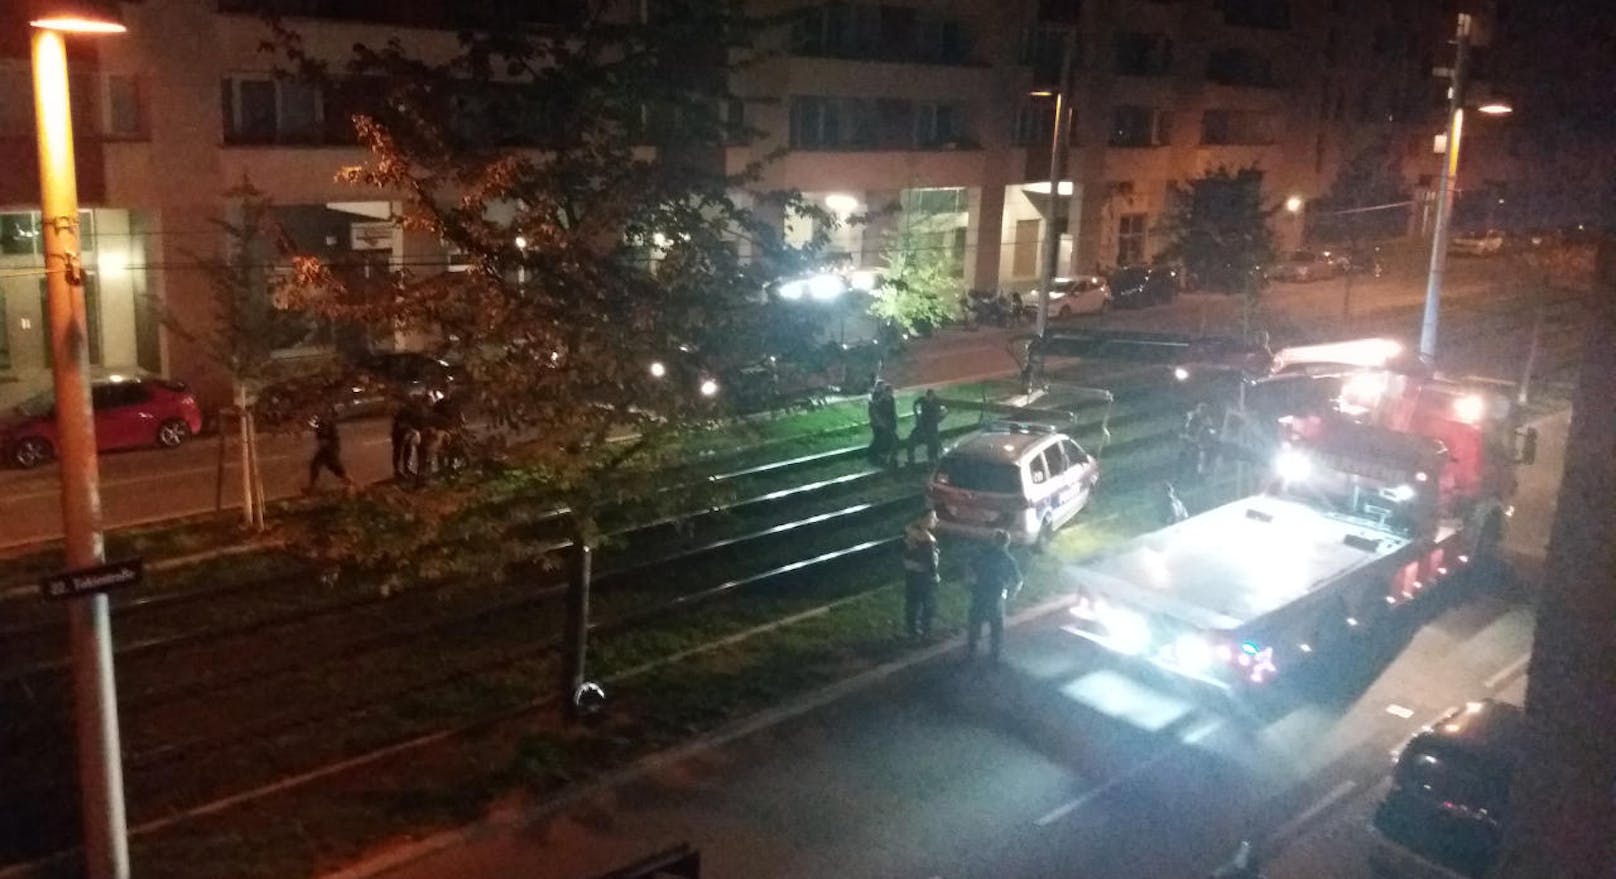 Einsatzkräfte der Wiener Berufsfeuerwehr rückten an und hoben das Polizei-Fahrzeug vom Schienenbett.  Damit war der "Rettungseinsatz" auch schon wieder vorbei.